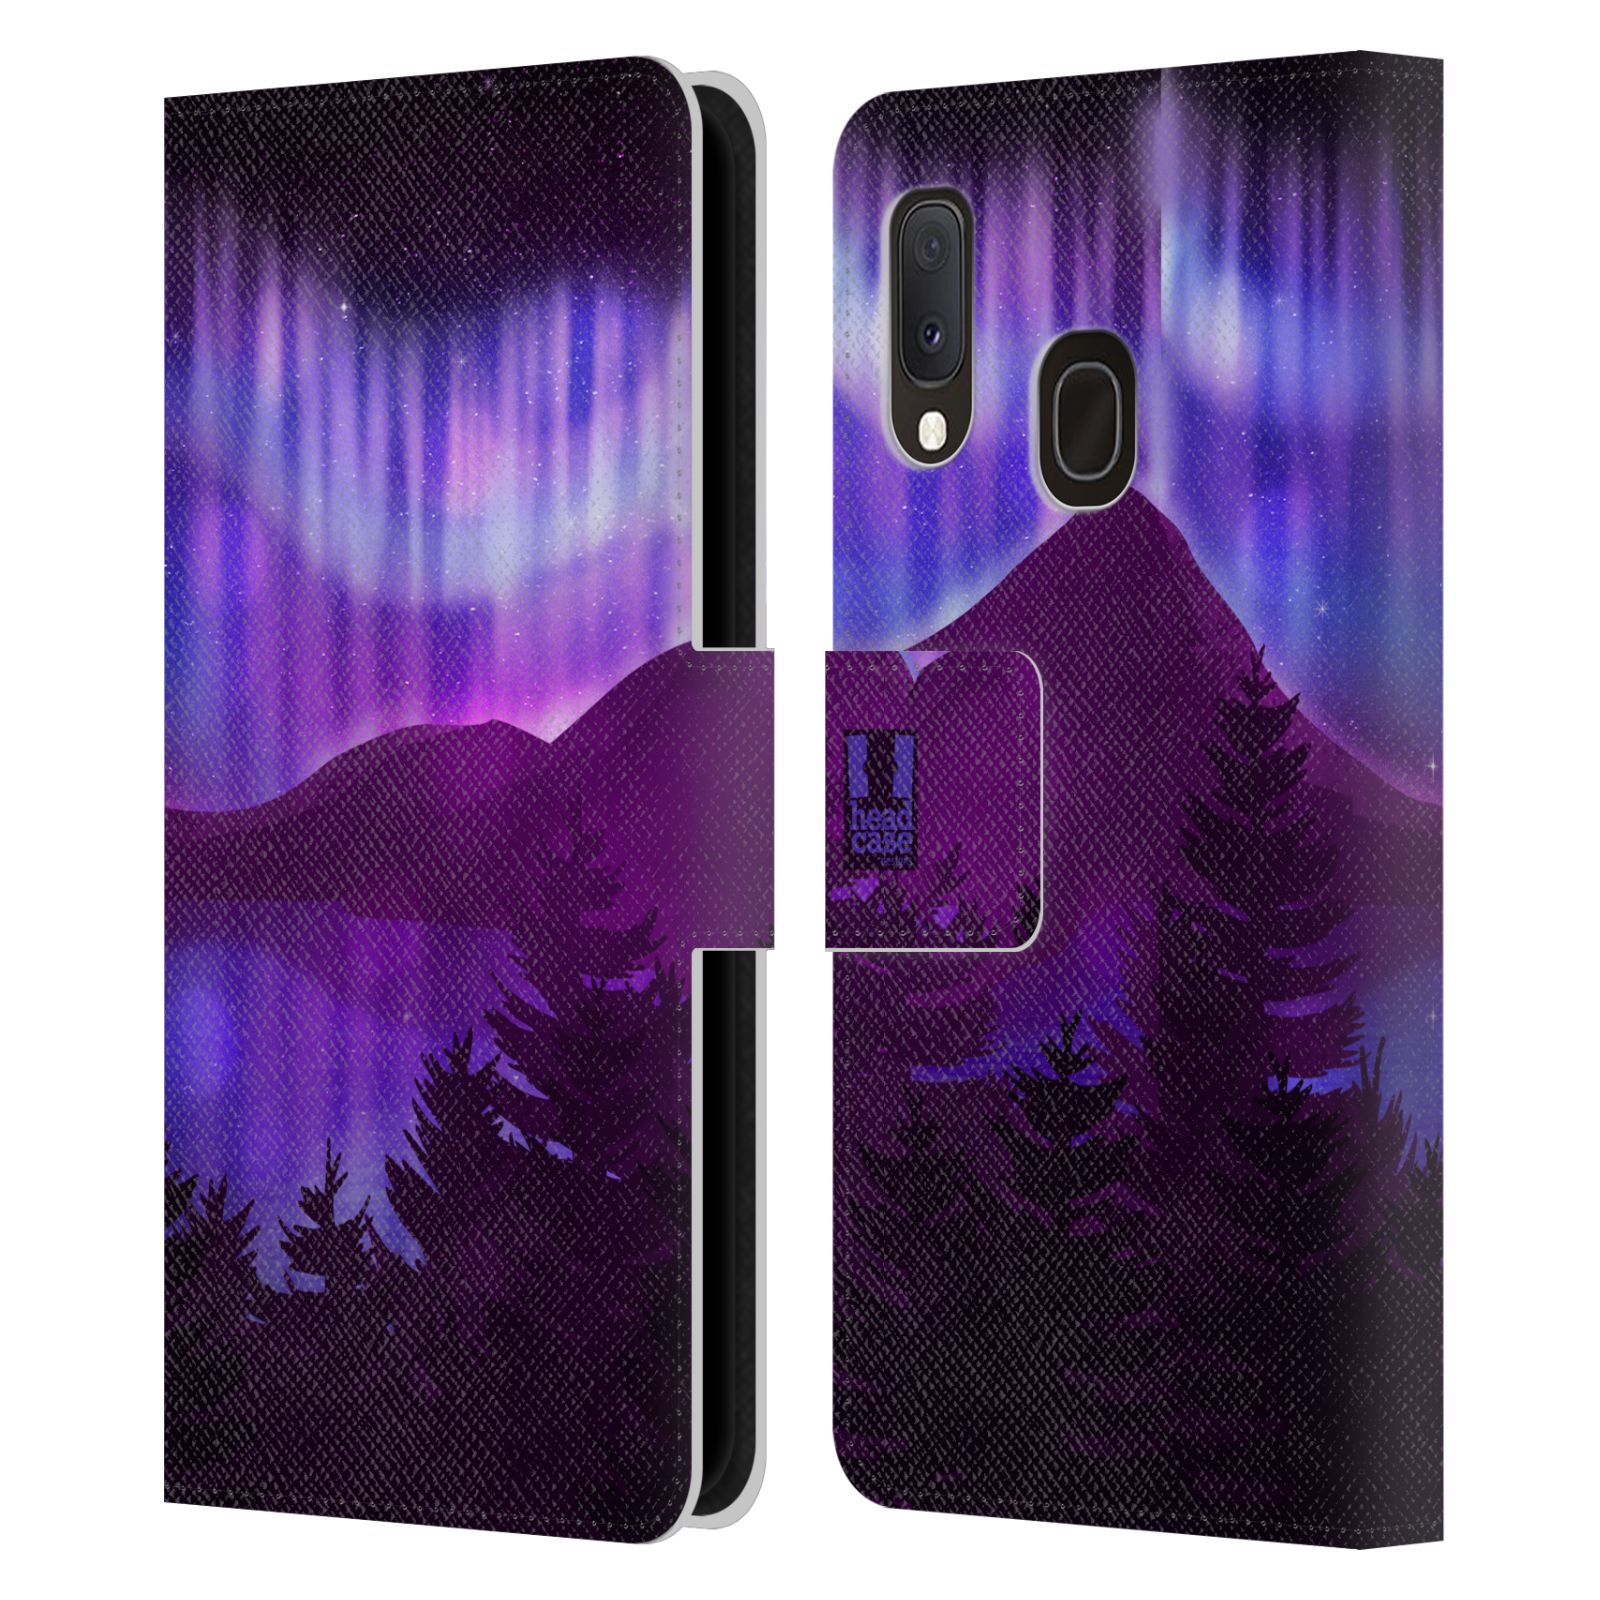 Pouzdro na mobil Samsung Galaxy A20E - HEAD CASE - Hory a lesy fialový odstín